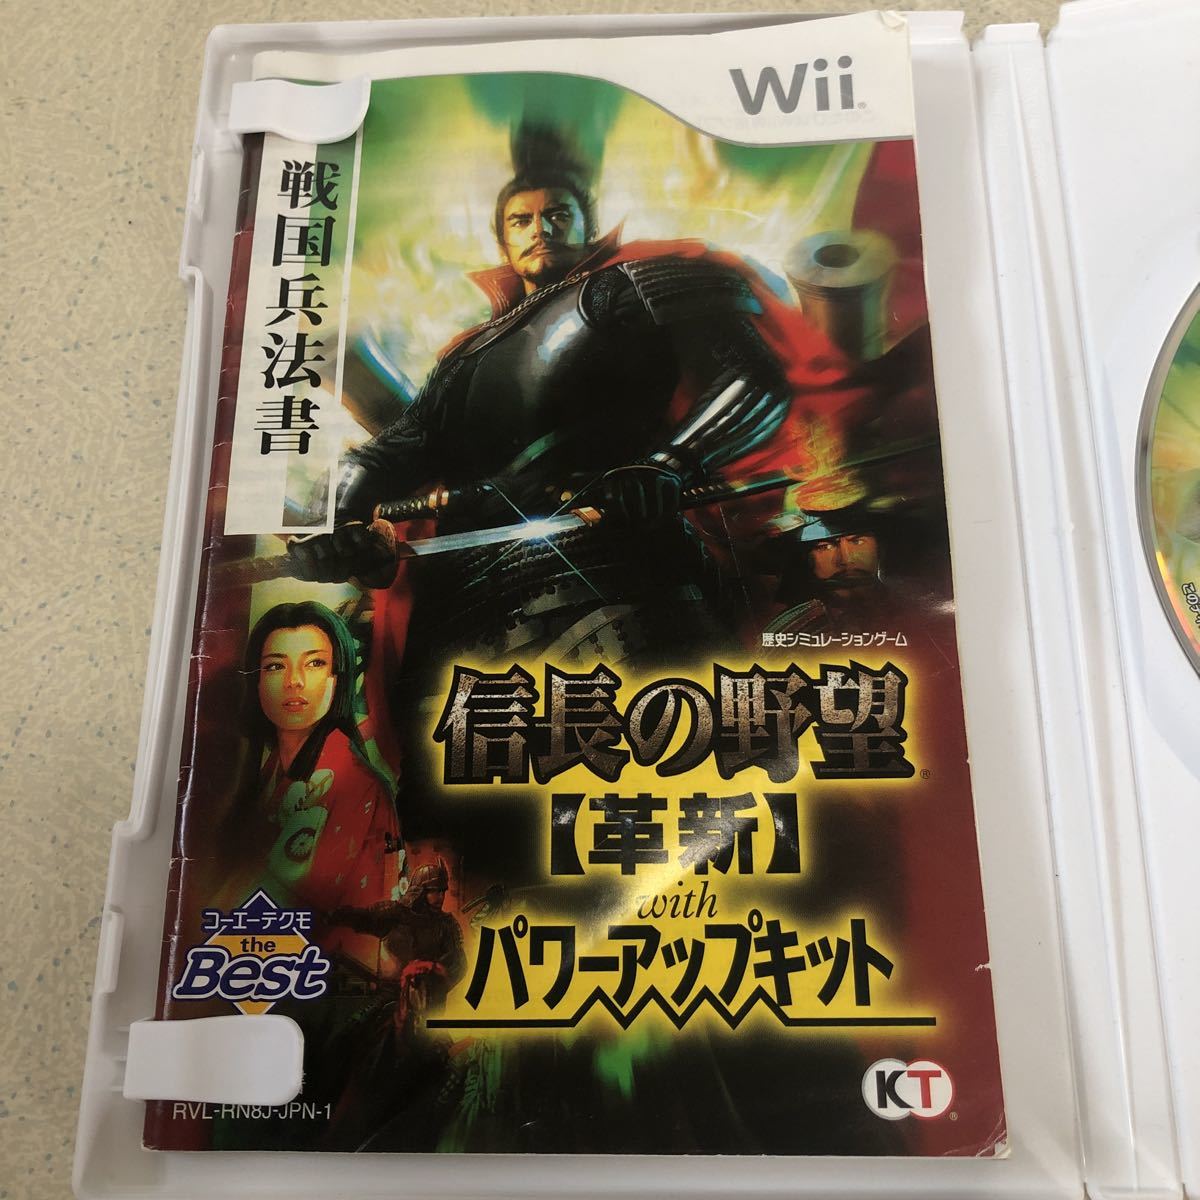 信長の野望・革新 with パワーアップキット コーエーテクモ the Best Wii 【3261】